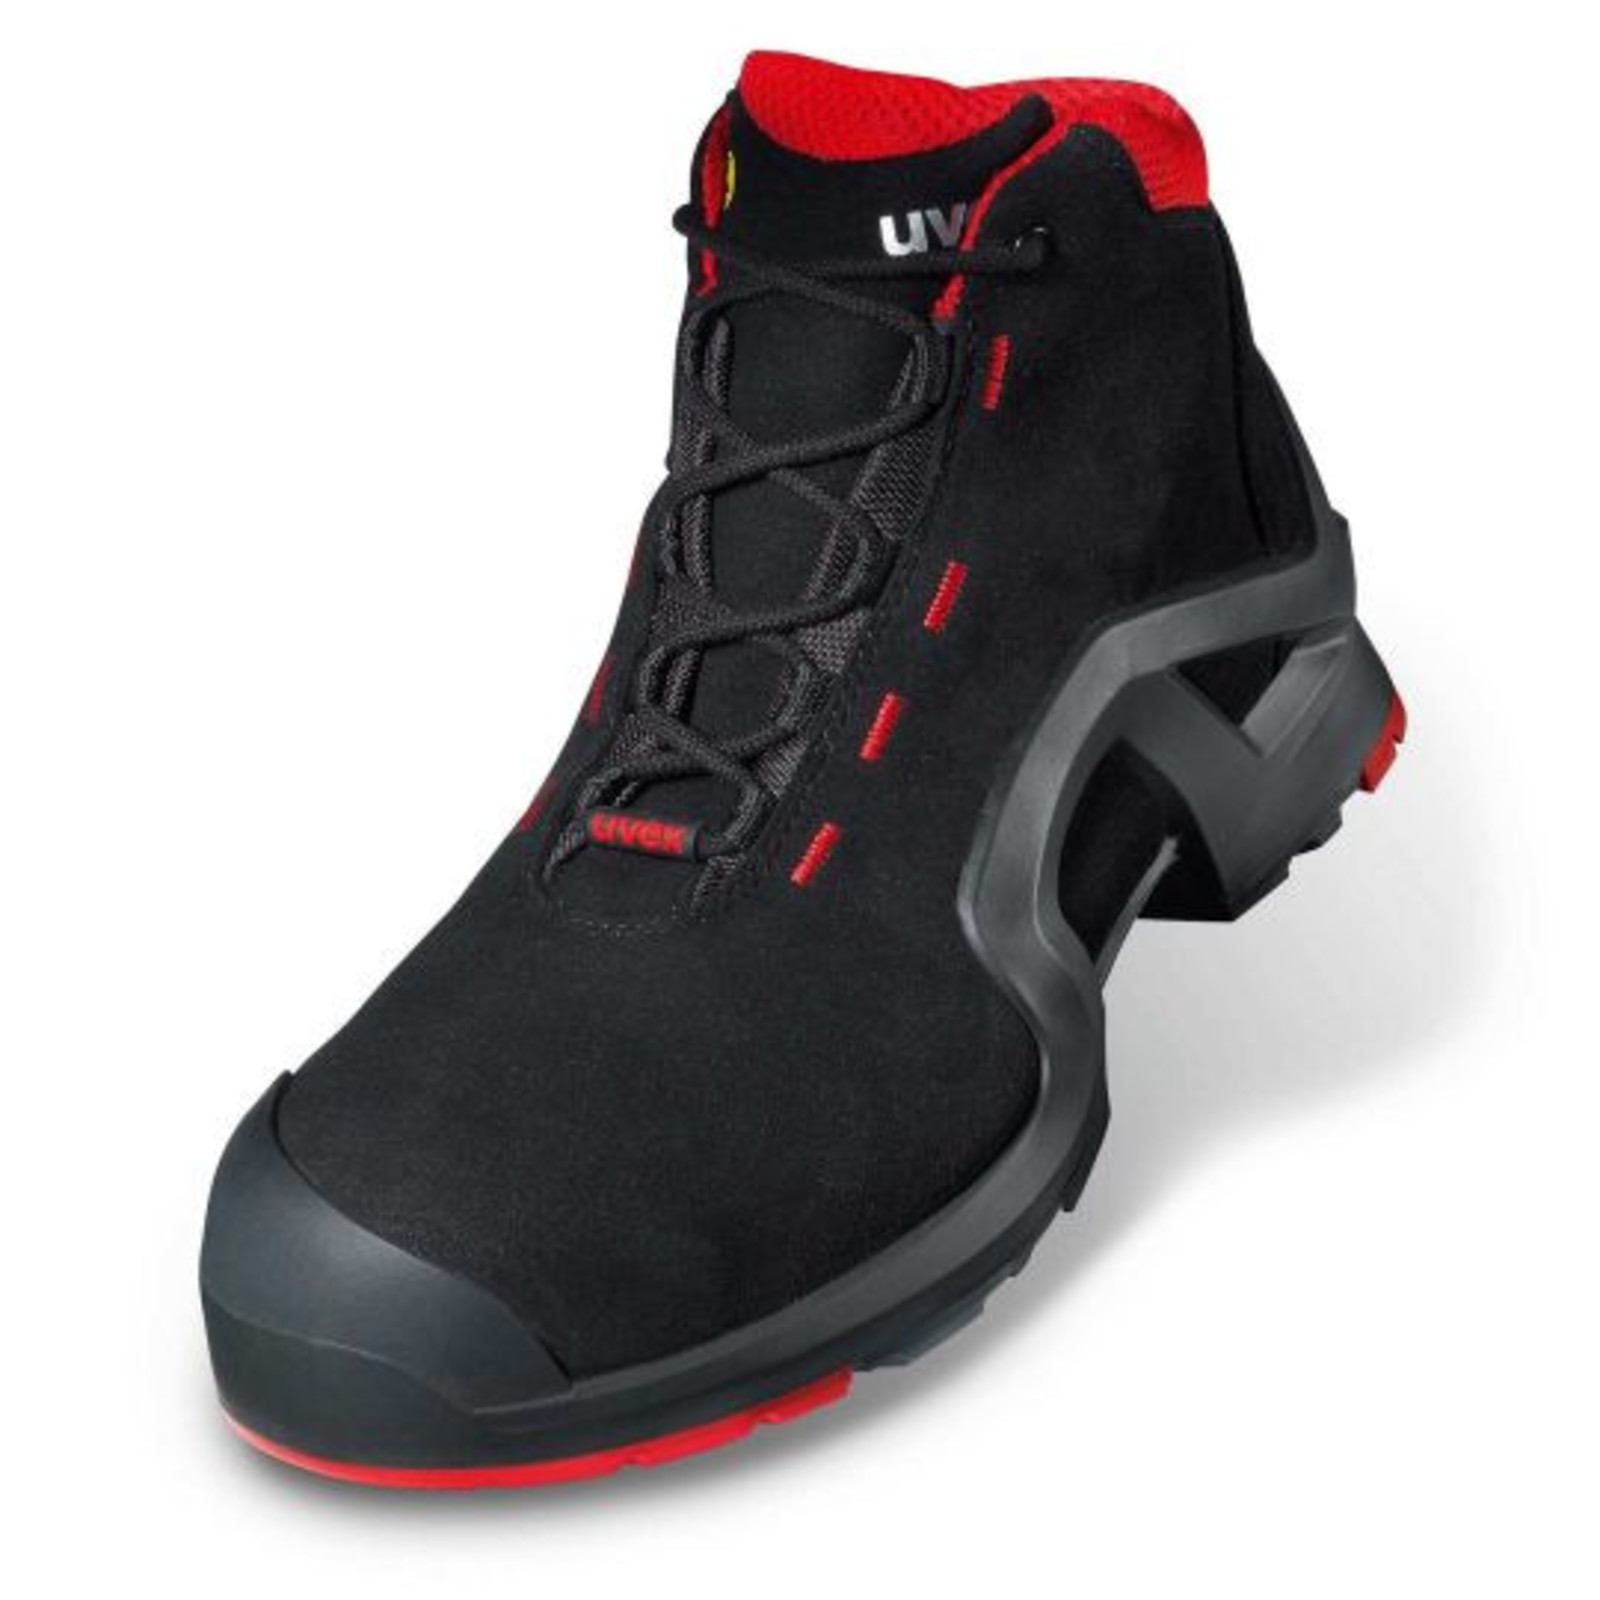 Vysoká bezpečnostná obuv Uvex 1 x-tended support S3 85172 - veľkosť: 49, farba: čierna/červená